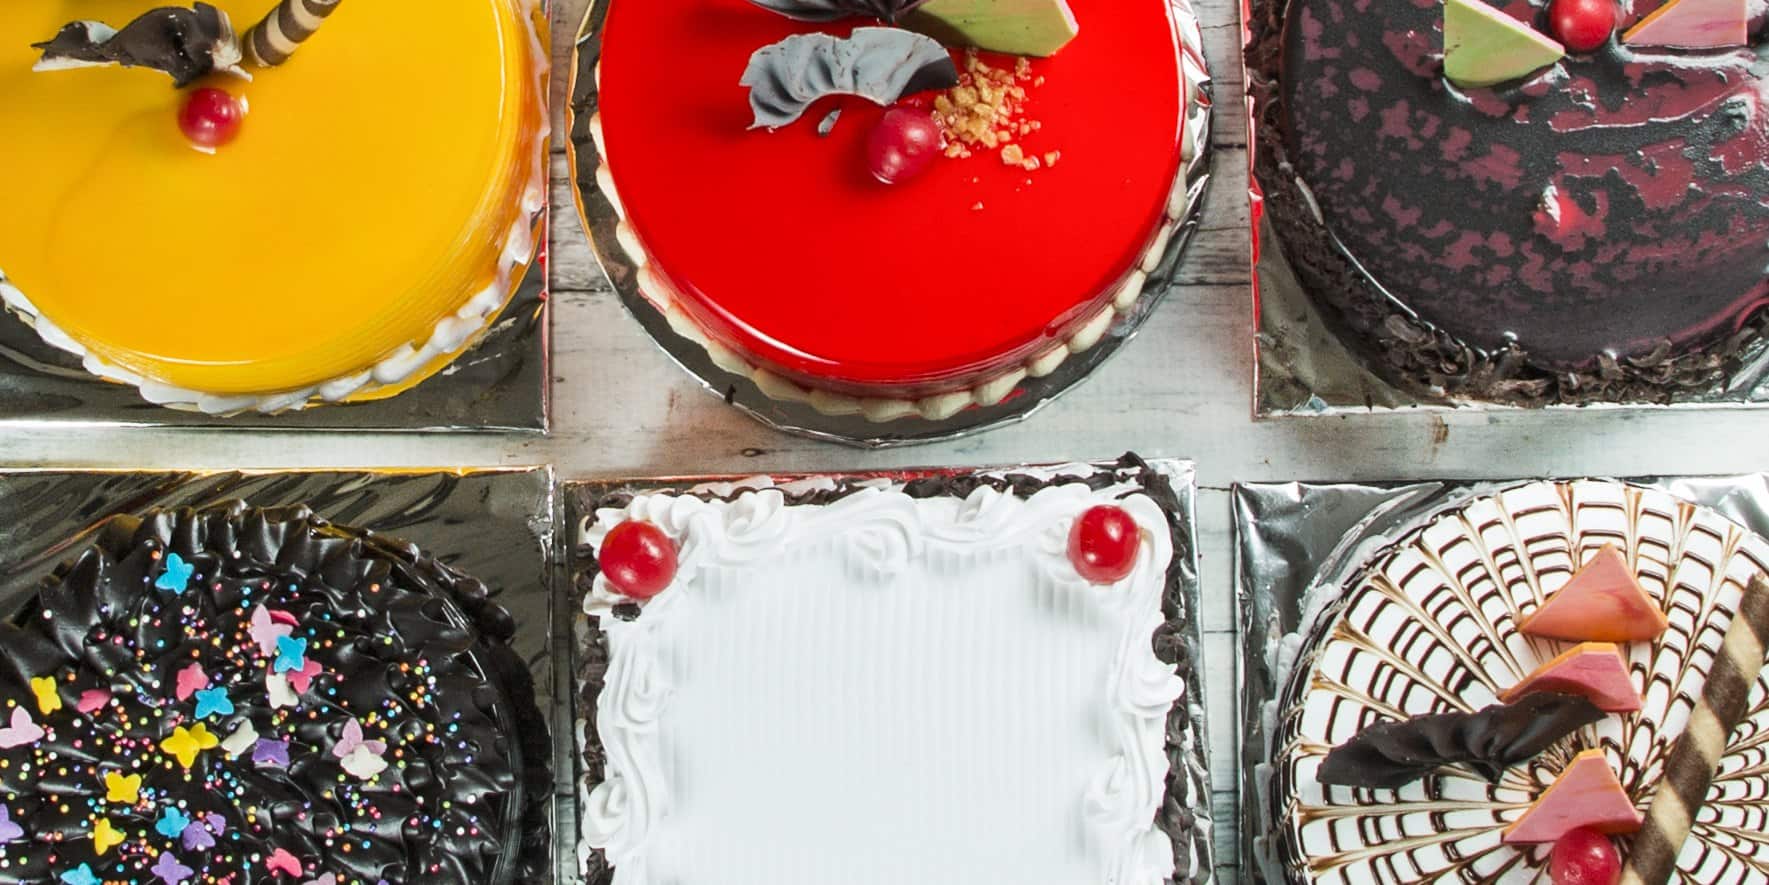 Cakeology Cake, Agra Cantt order online - Zomato